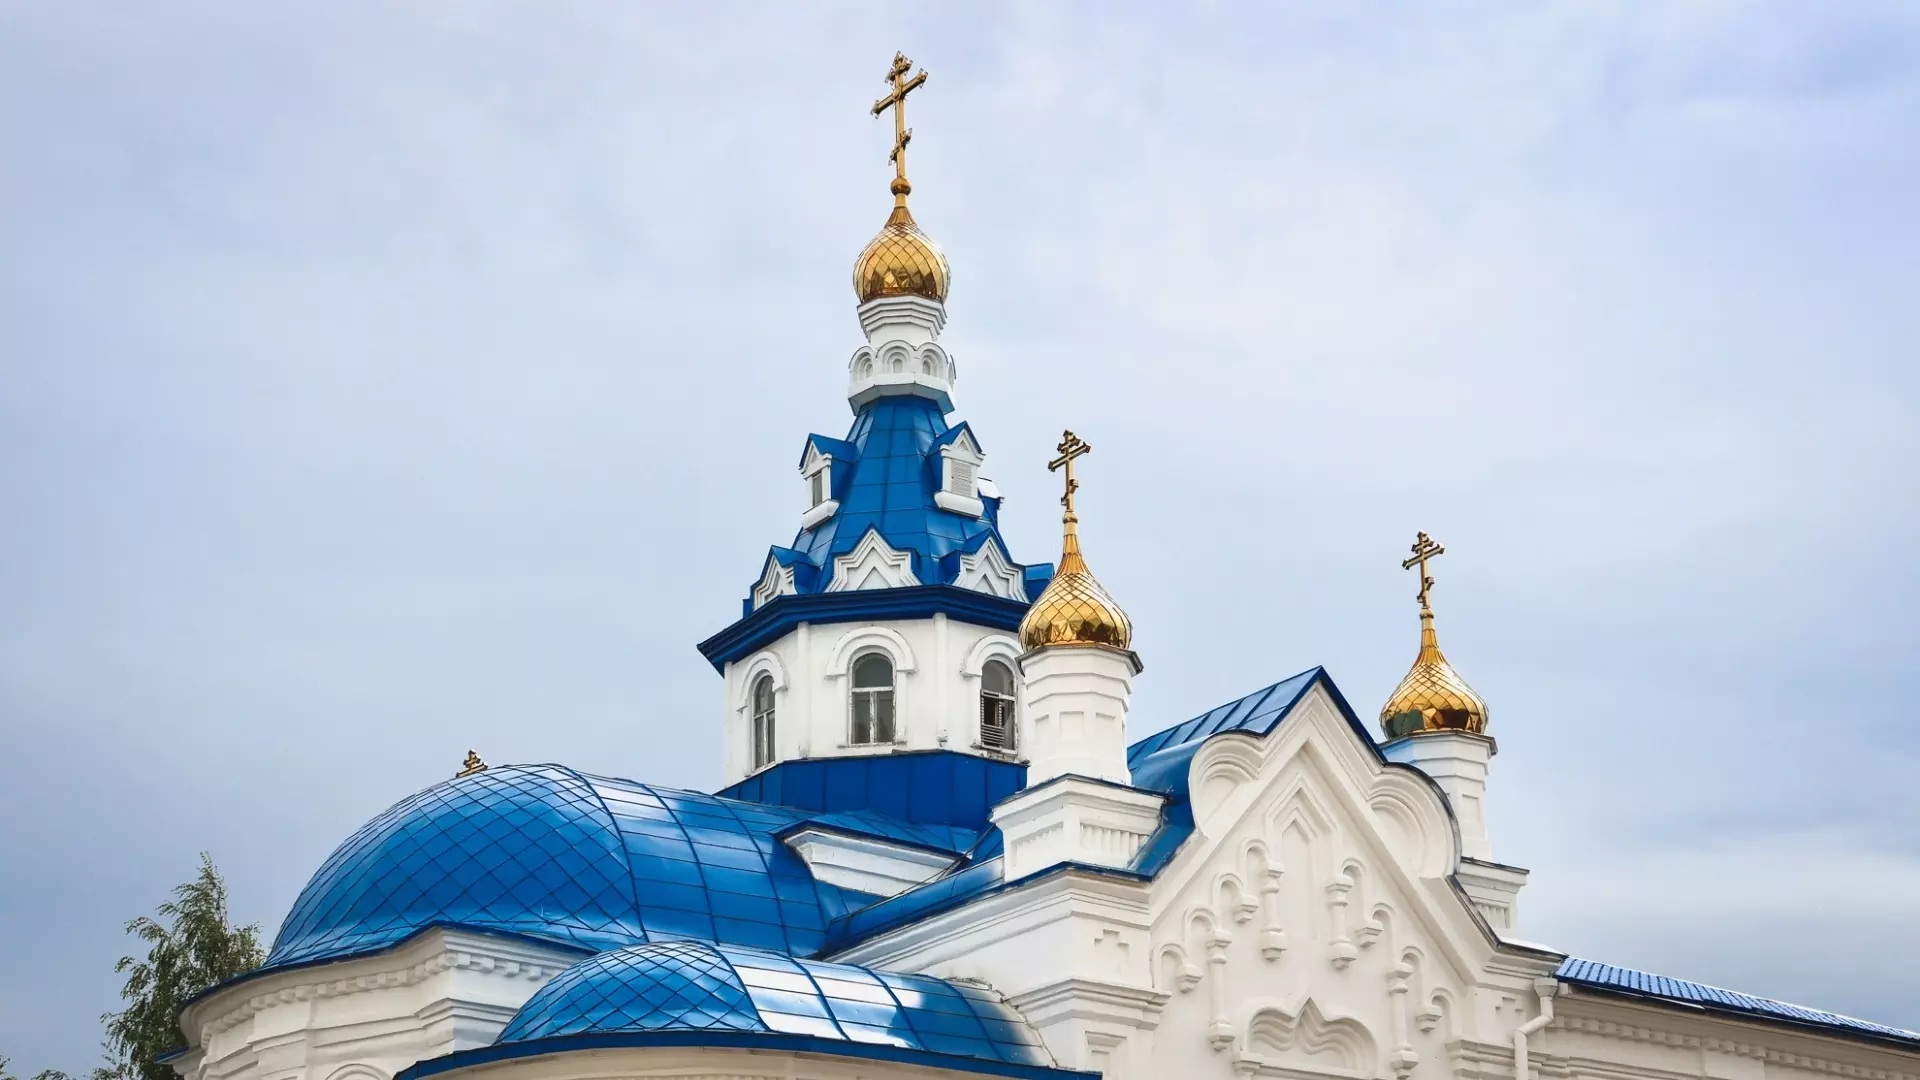 Нижегородец попался на ограблении православного храма в Краснодаре